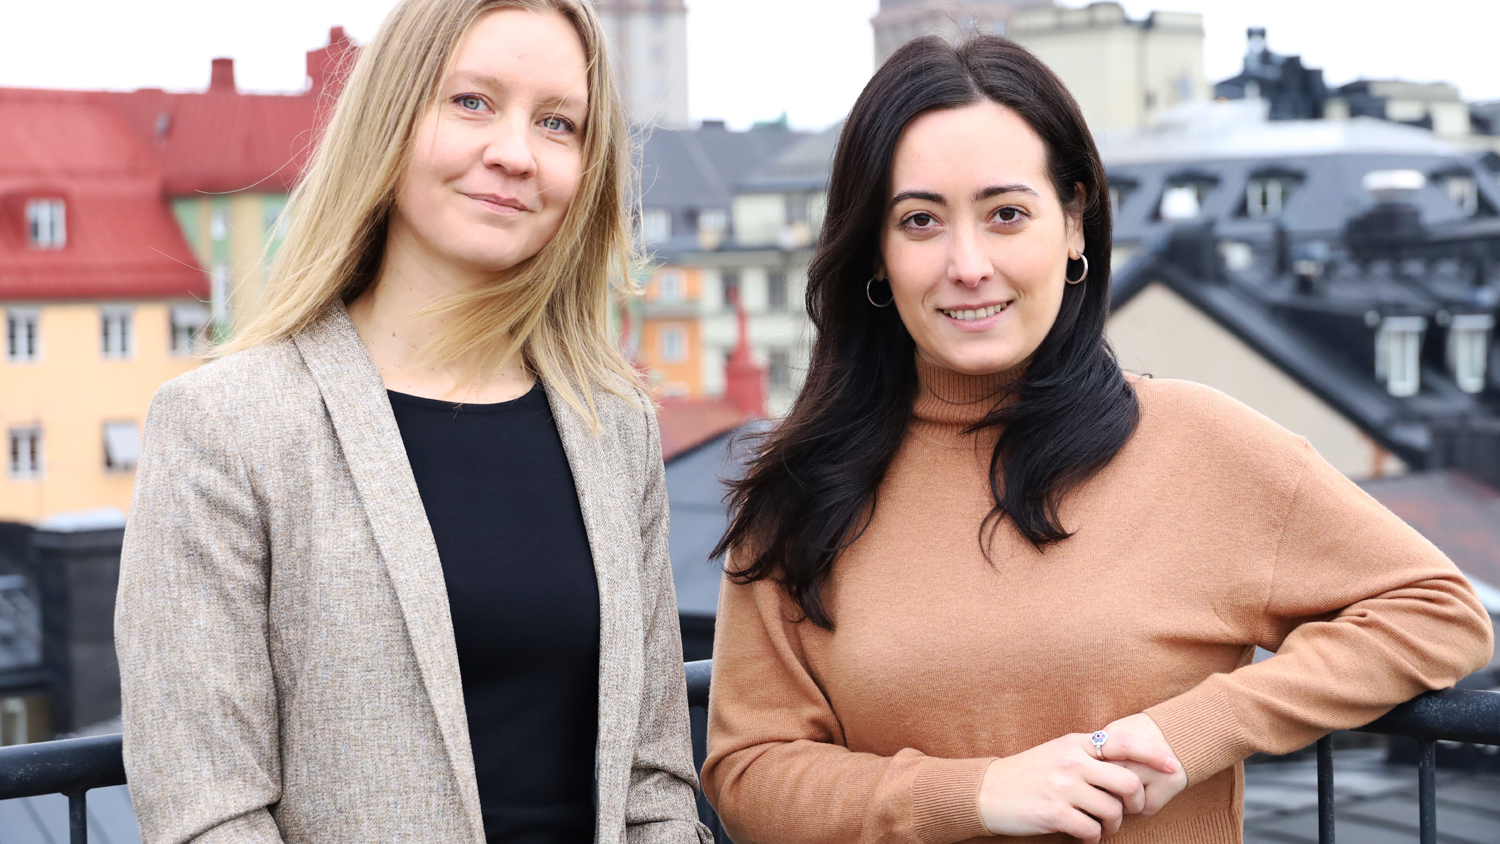 Kirsti Jylhä och Julia
Mosquera står framför ett räcke. I bakgrunden syns hustak.